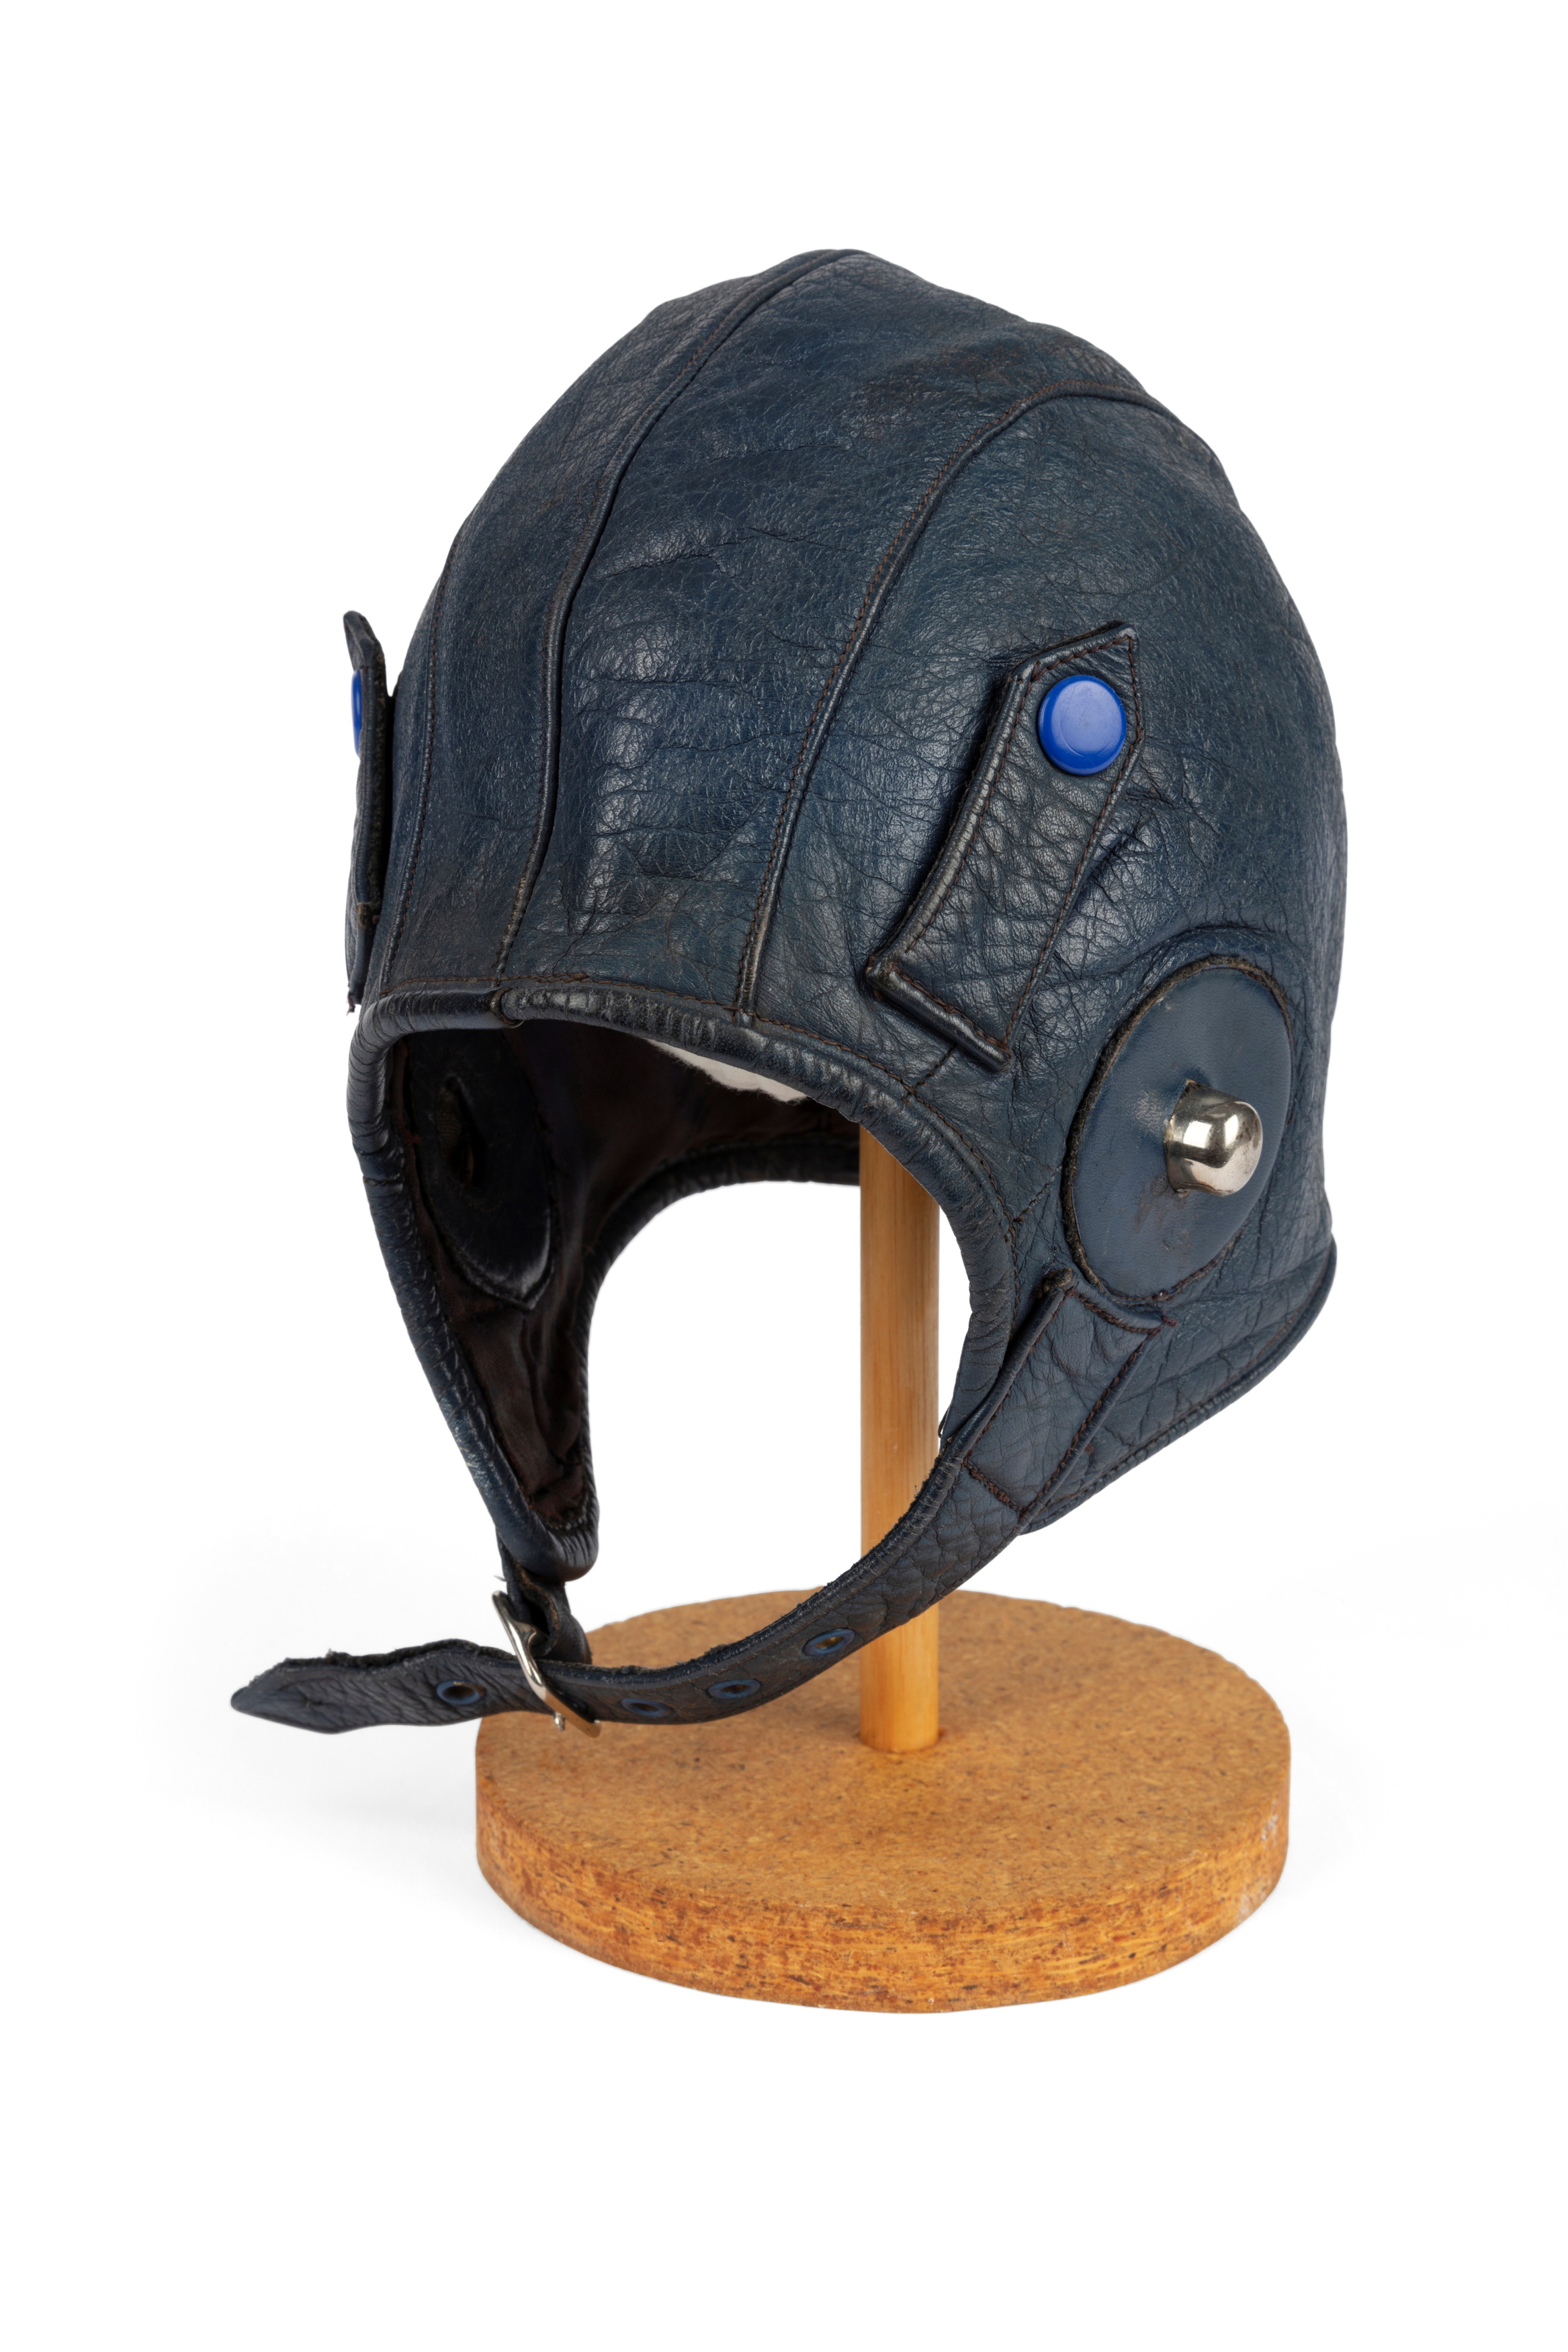 Flying helmet worn by Nancy Bird Walton after 1945